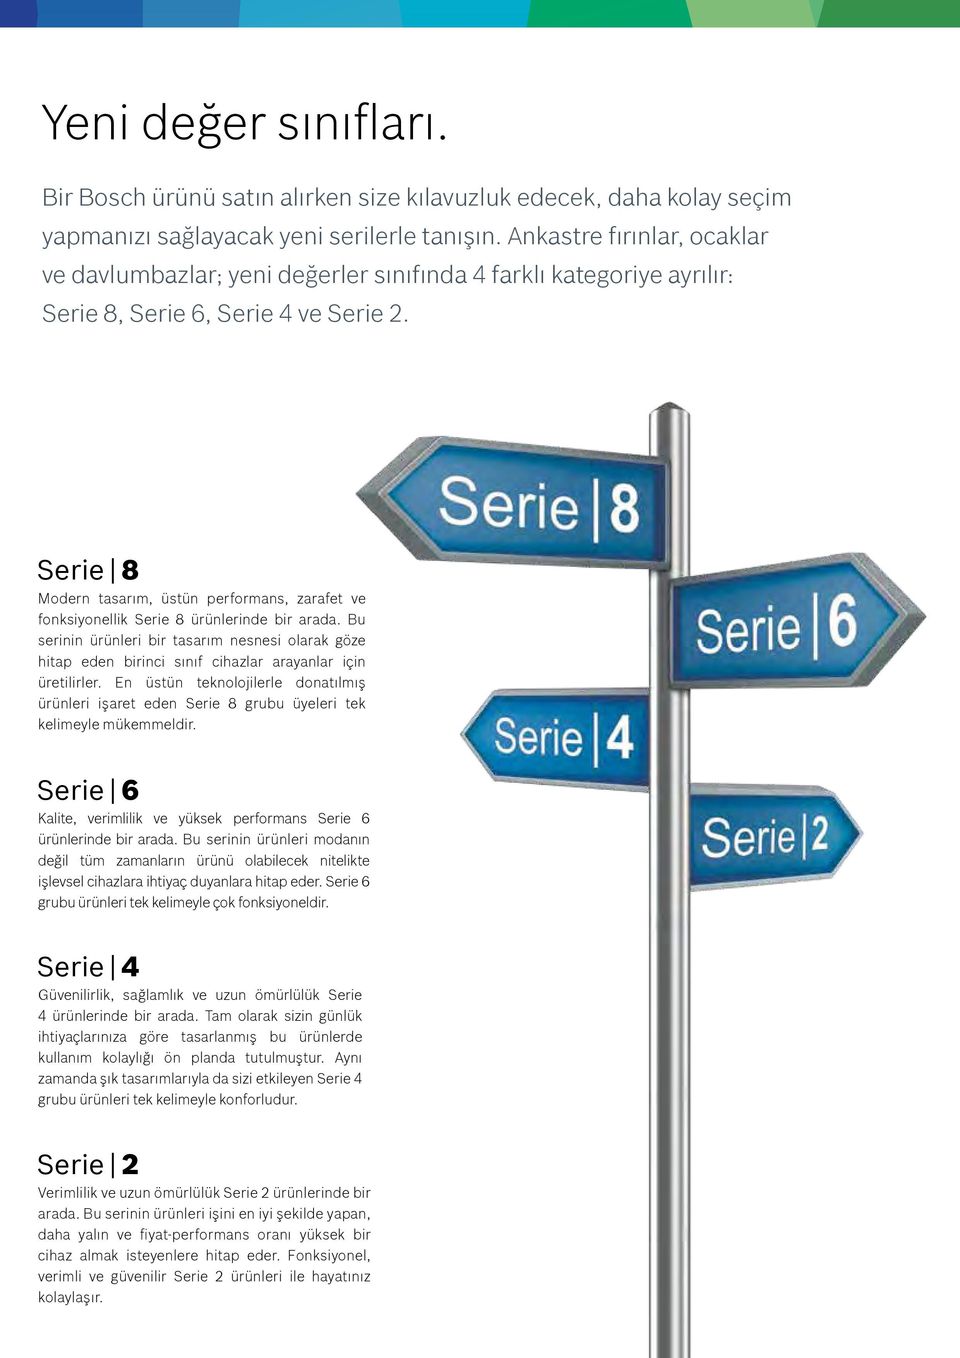 Serie 8 Modern tasarım, üstün performans, zarafet ve fonksiyonellik Serie 8 ürünlerinde bir arada.